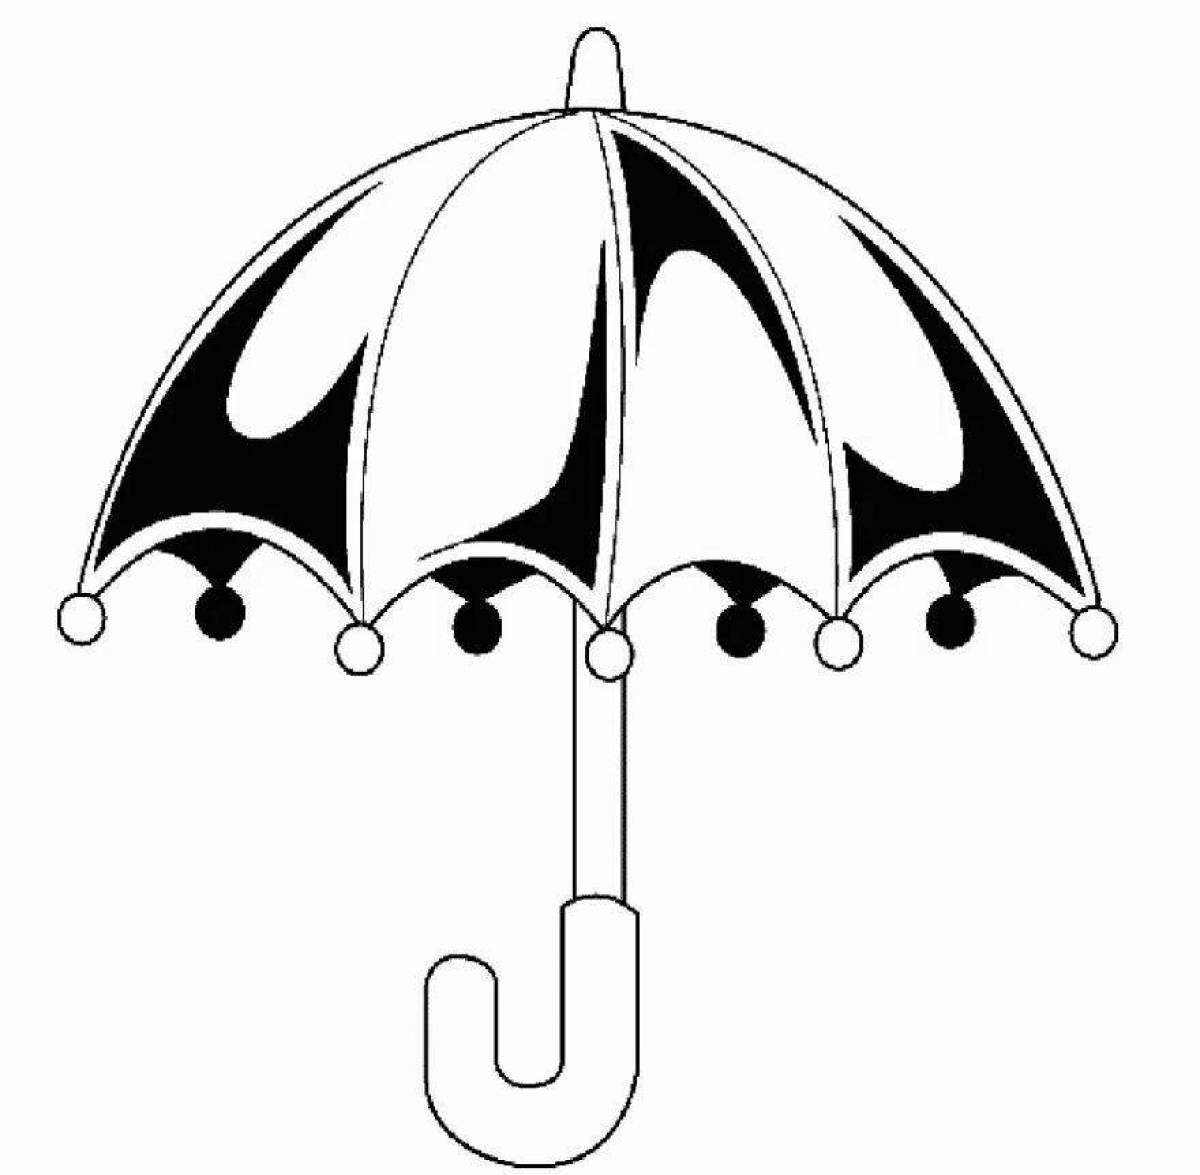 Красочная и яркая раскраска зонтик для детей